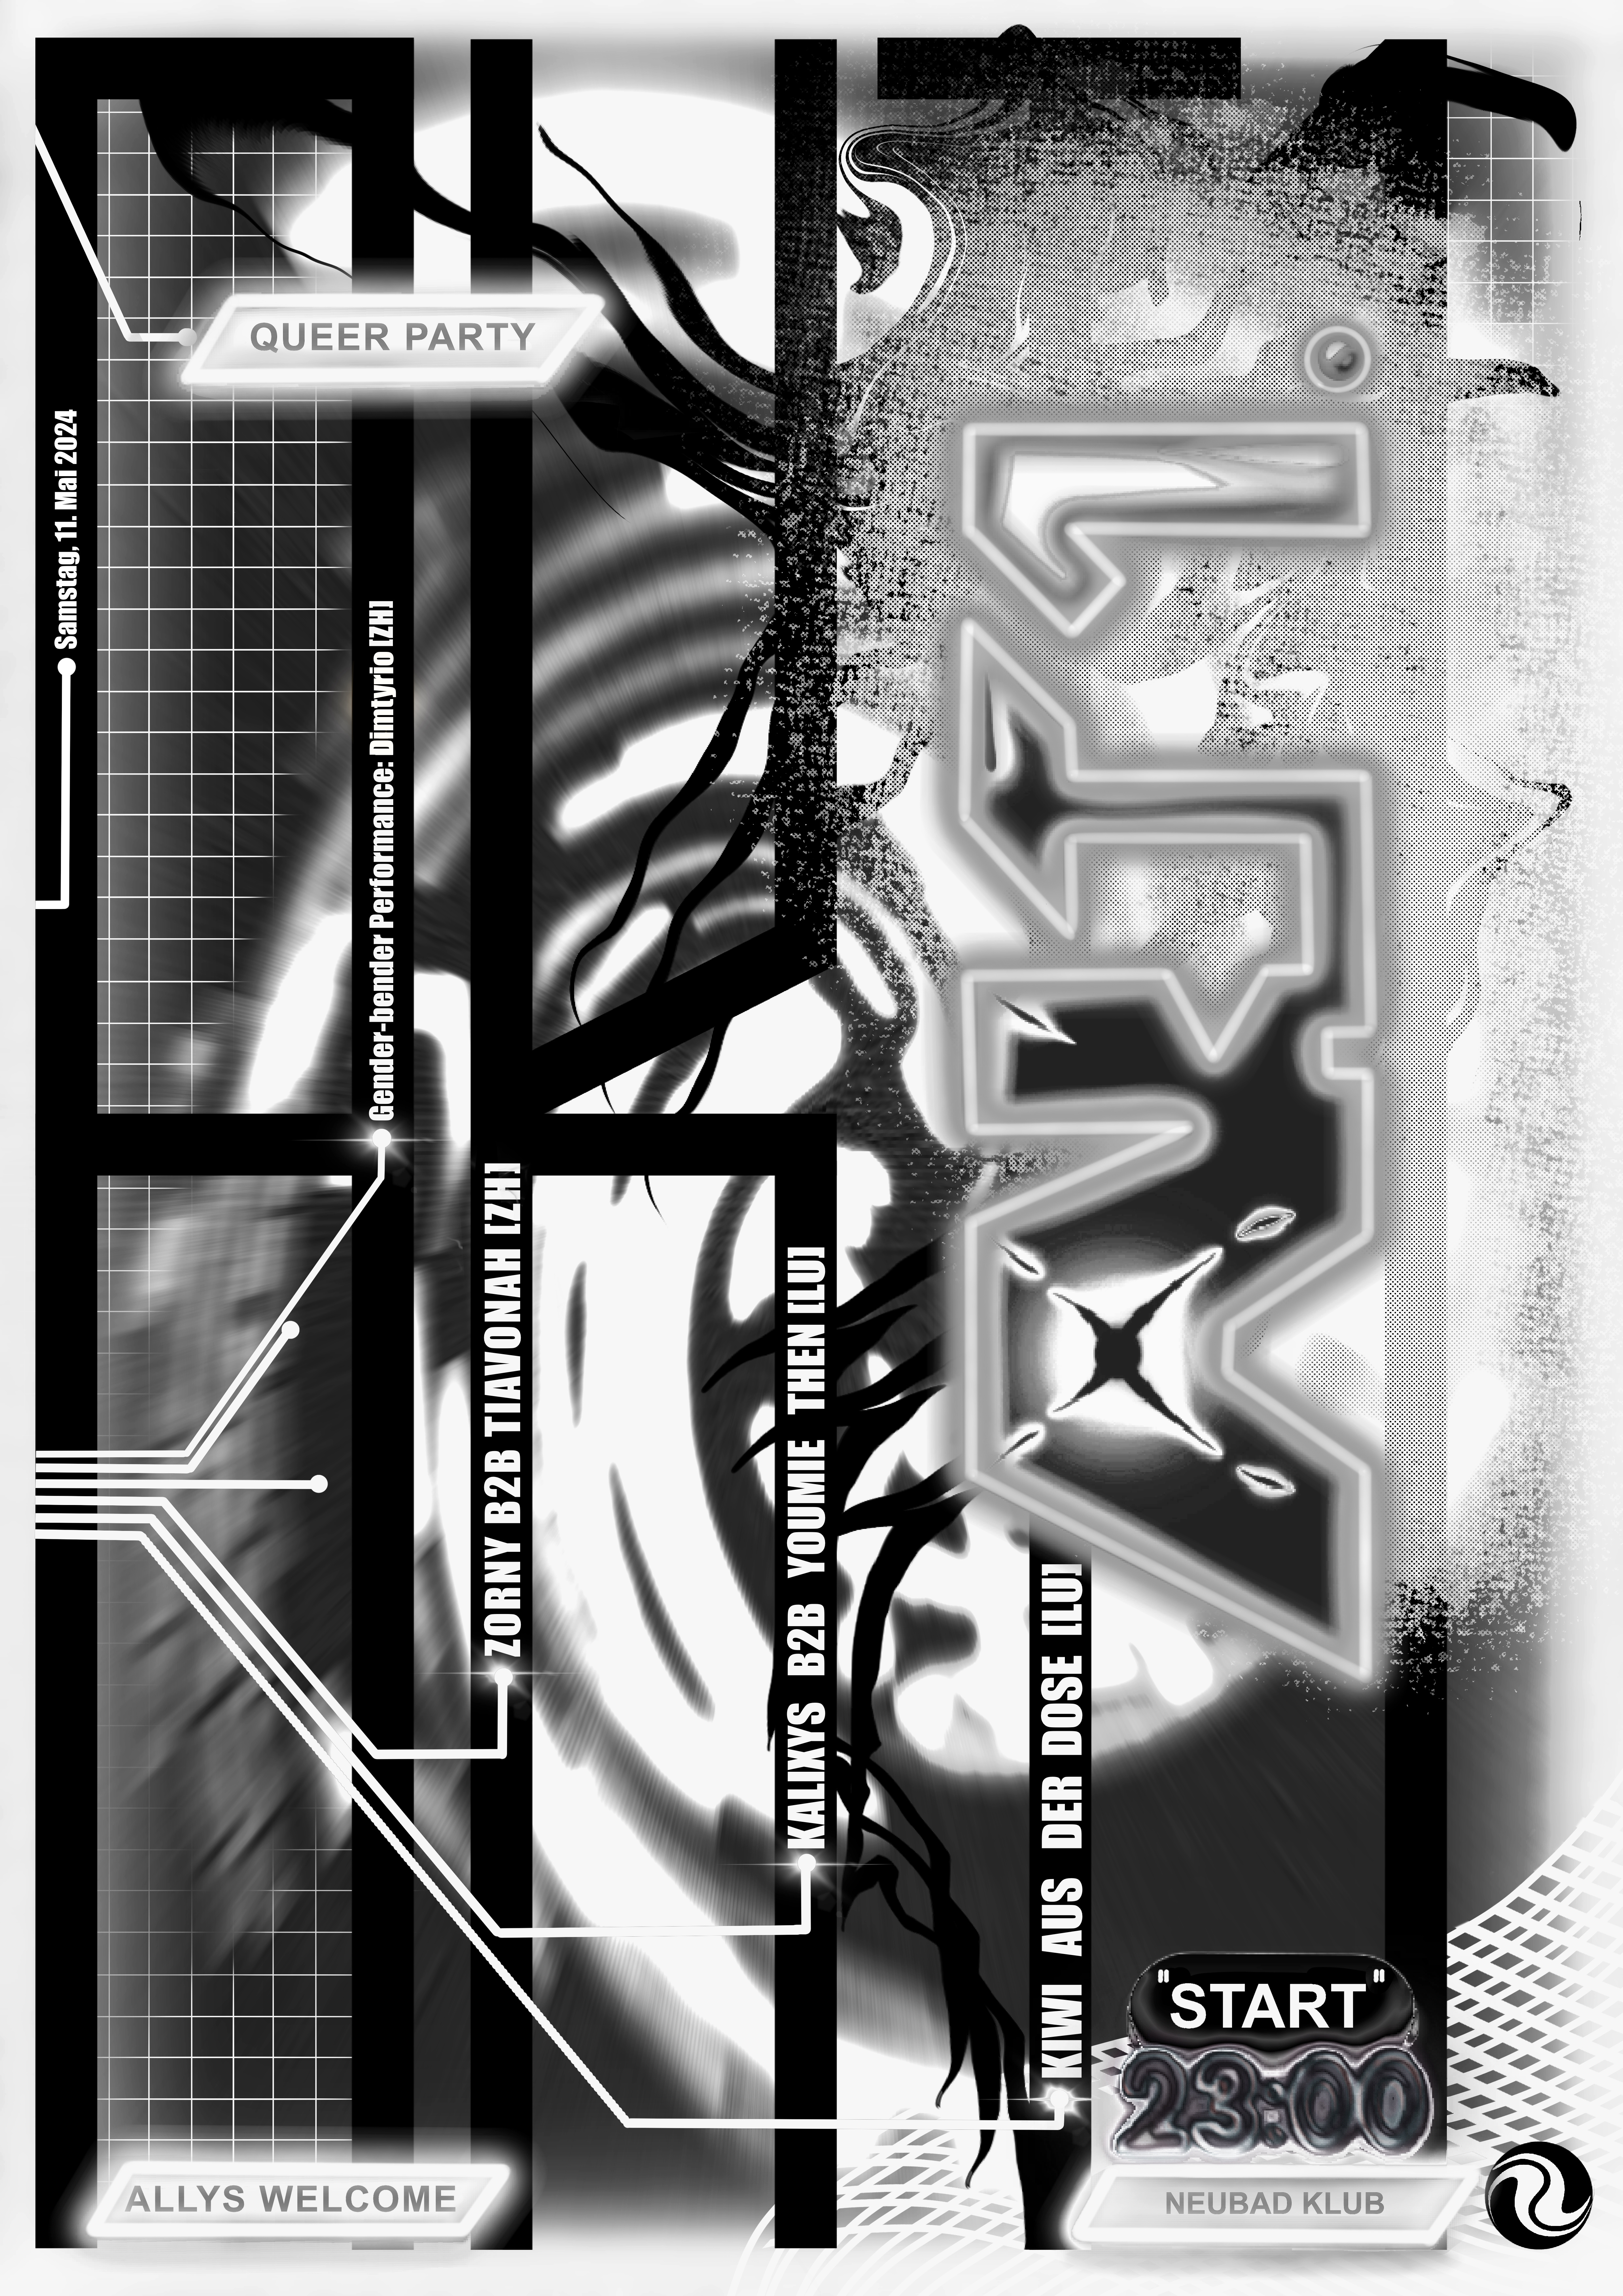 abstrakte schwarz-grau-weisse Grafik mit weisser Typografie